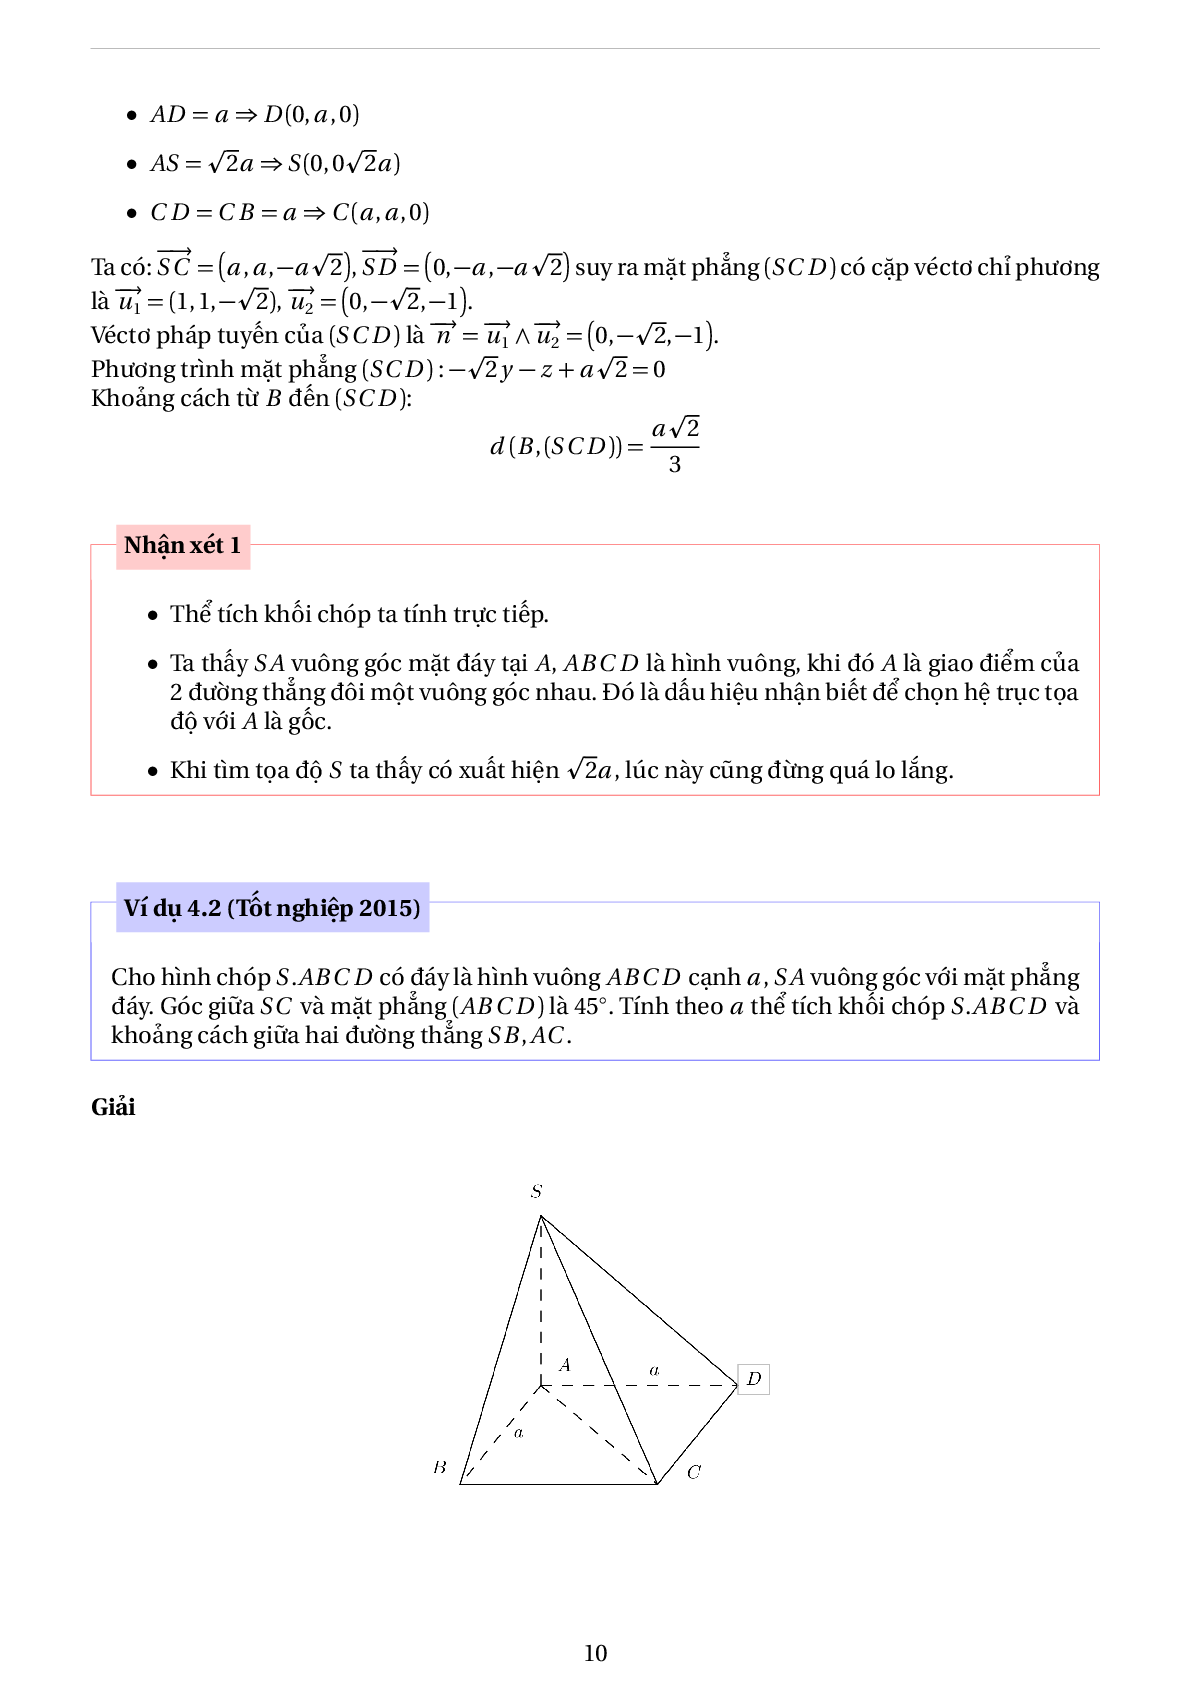 Phương pháp tọa độ hóa để giải bài toán hình học không gian - phần 2 (trang 10)